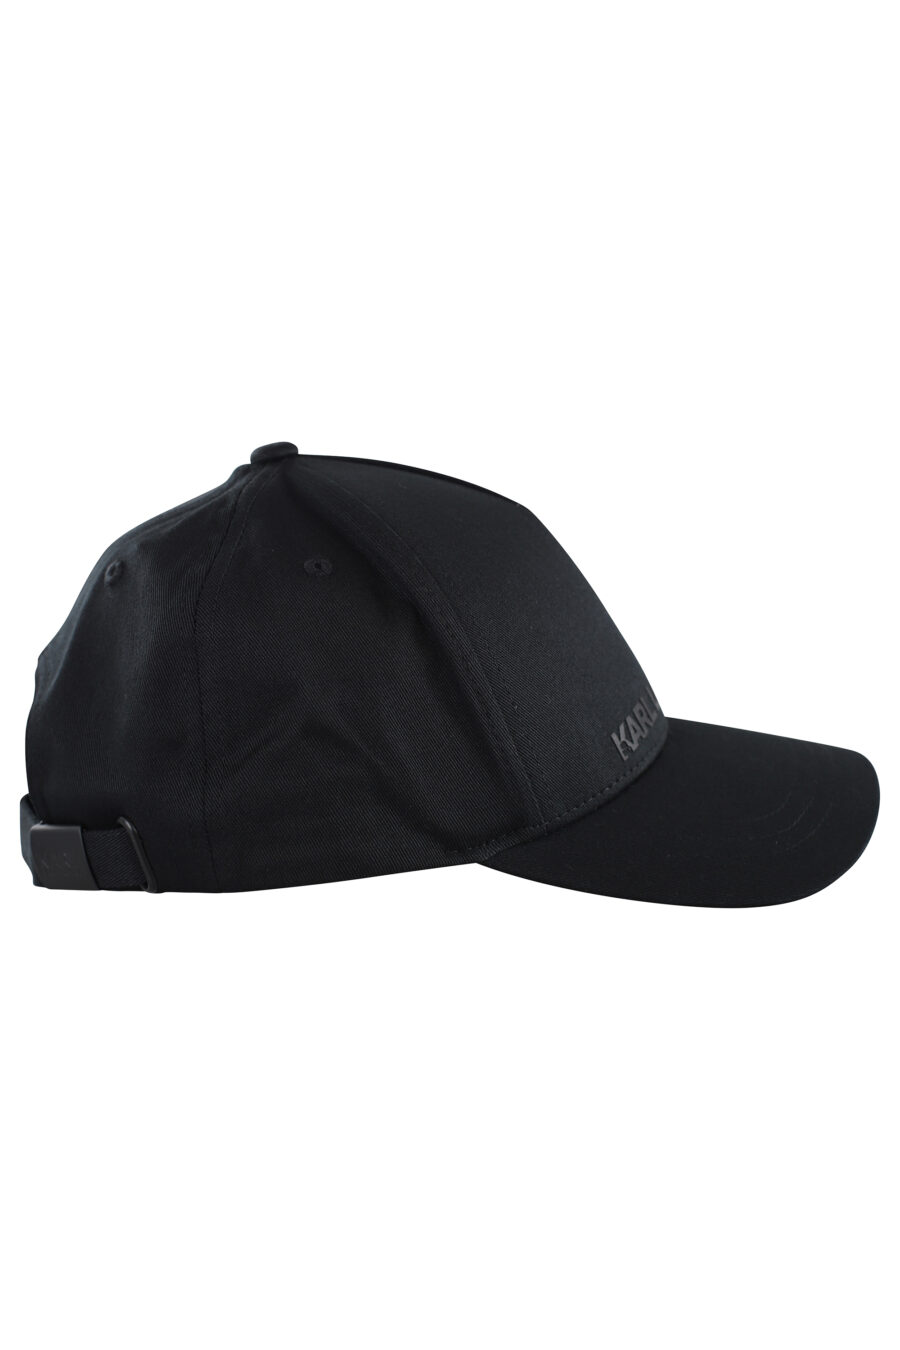 Gorra negra con logo monocromático - IMG 7060